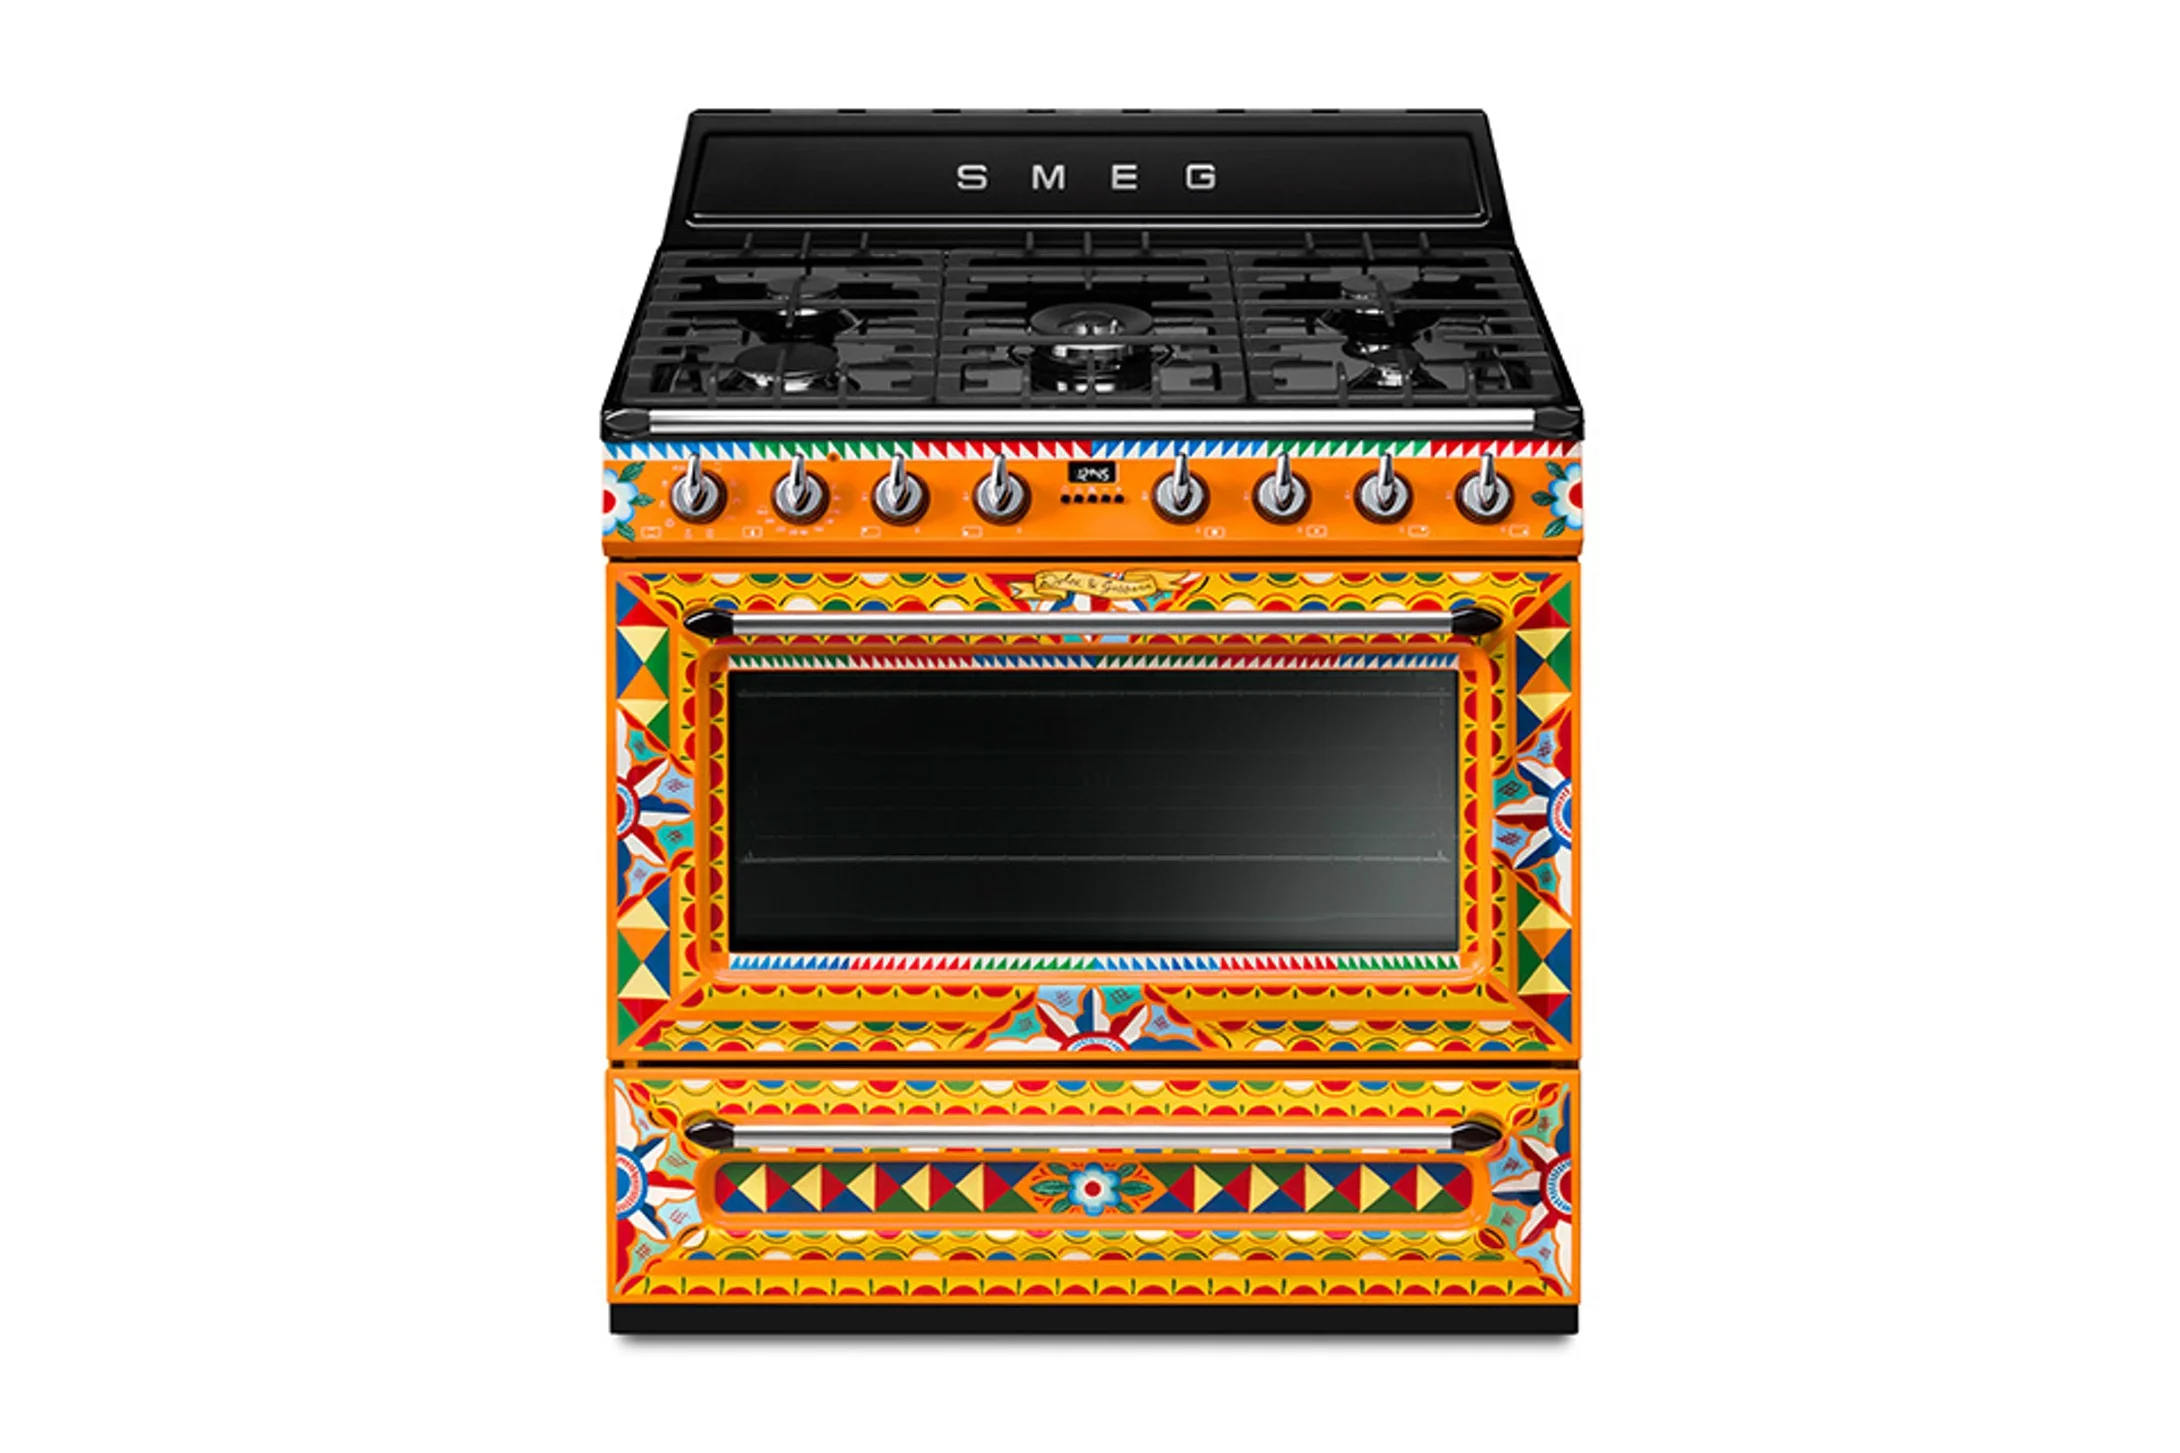 Dolce & Gabbana випустили техніку для кухні - ось, як виглядає ця дизайнерська розкіш - фото 380579